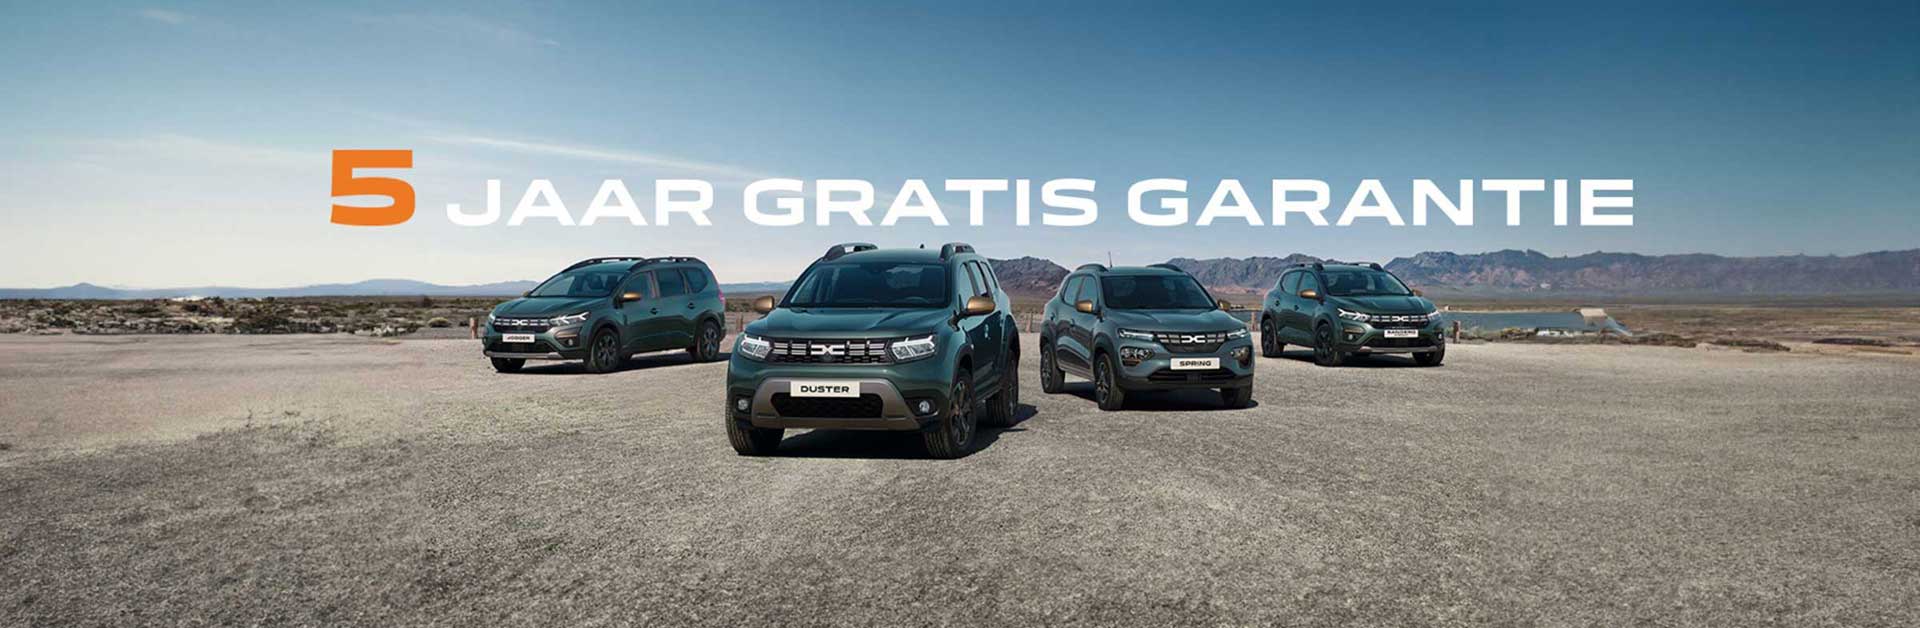 Dacia actie 5 jaar garantie